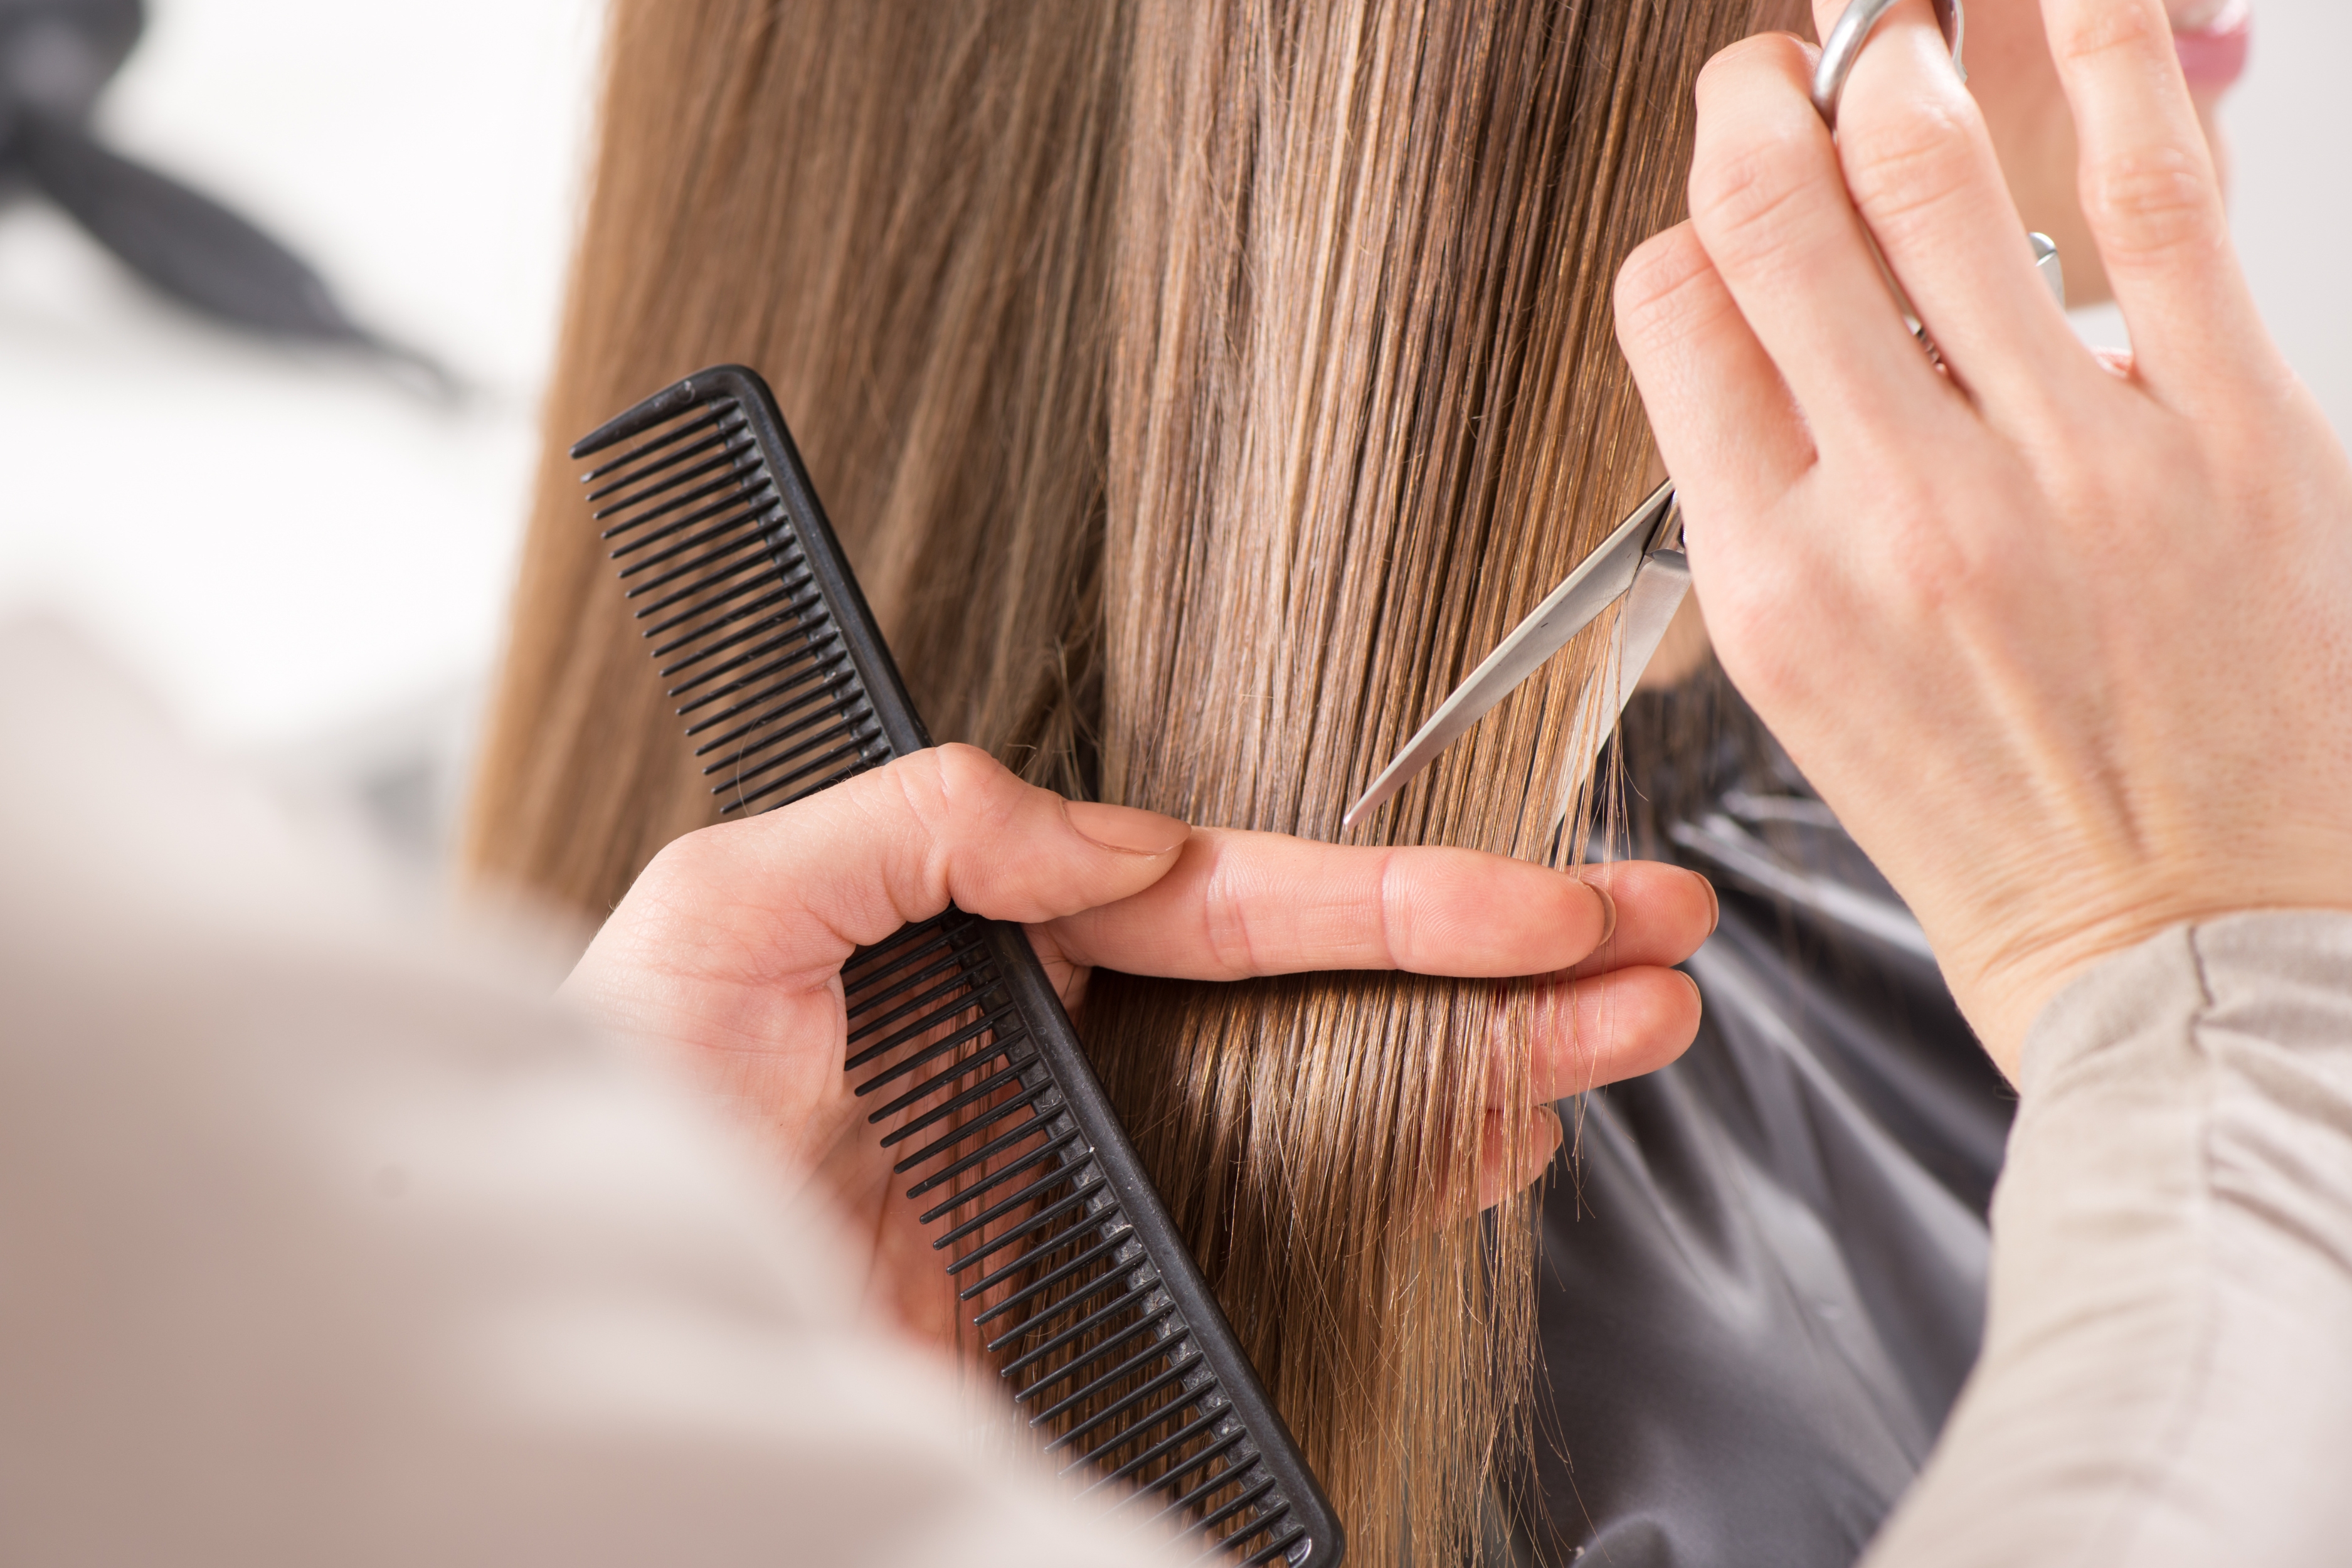 Πόσο μακραίνουν τα μαλλιά σε ένα μήνα; Μάθε ποιοι παράγοντες επηρεάζουν το ρυθμό ανάπτυξης τους